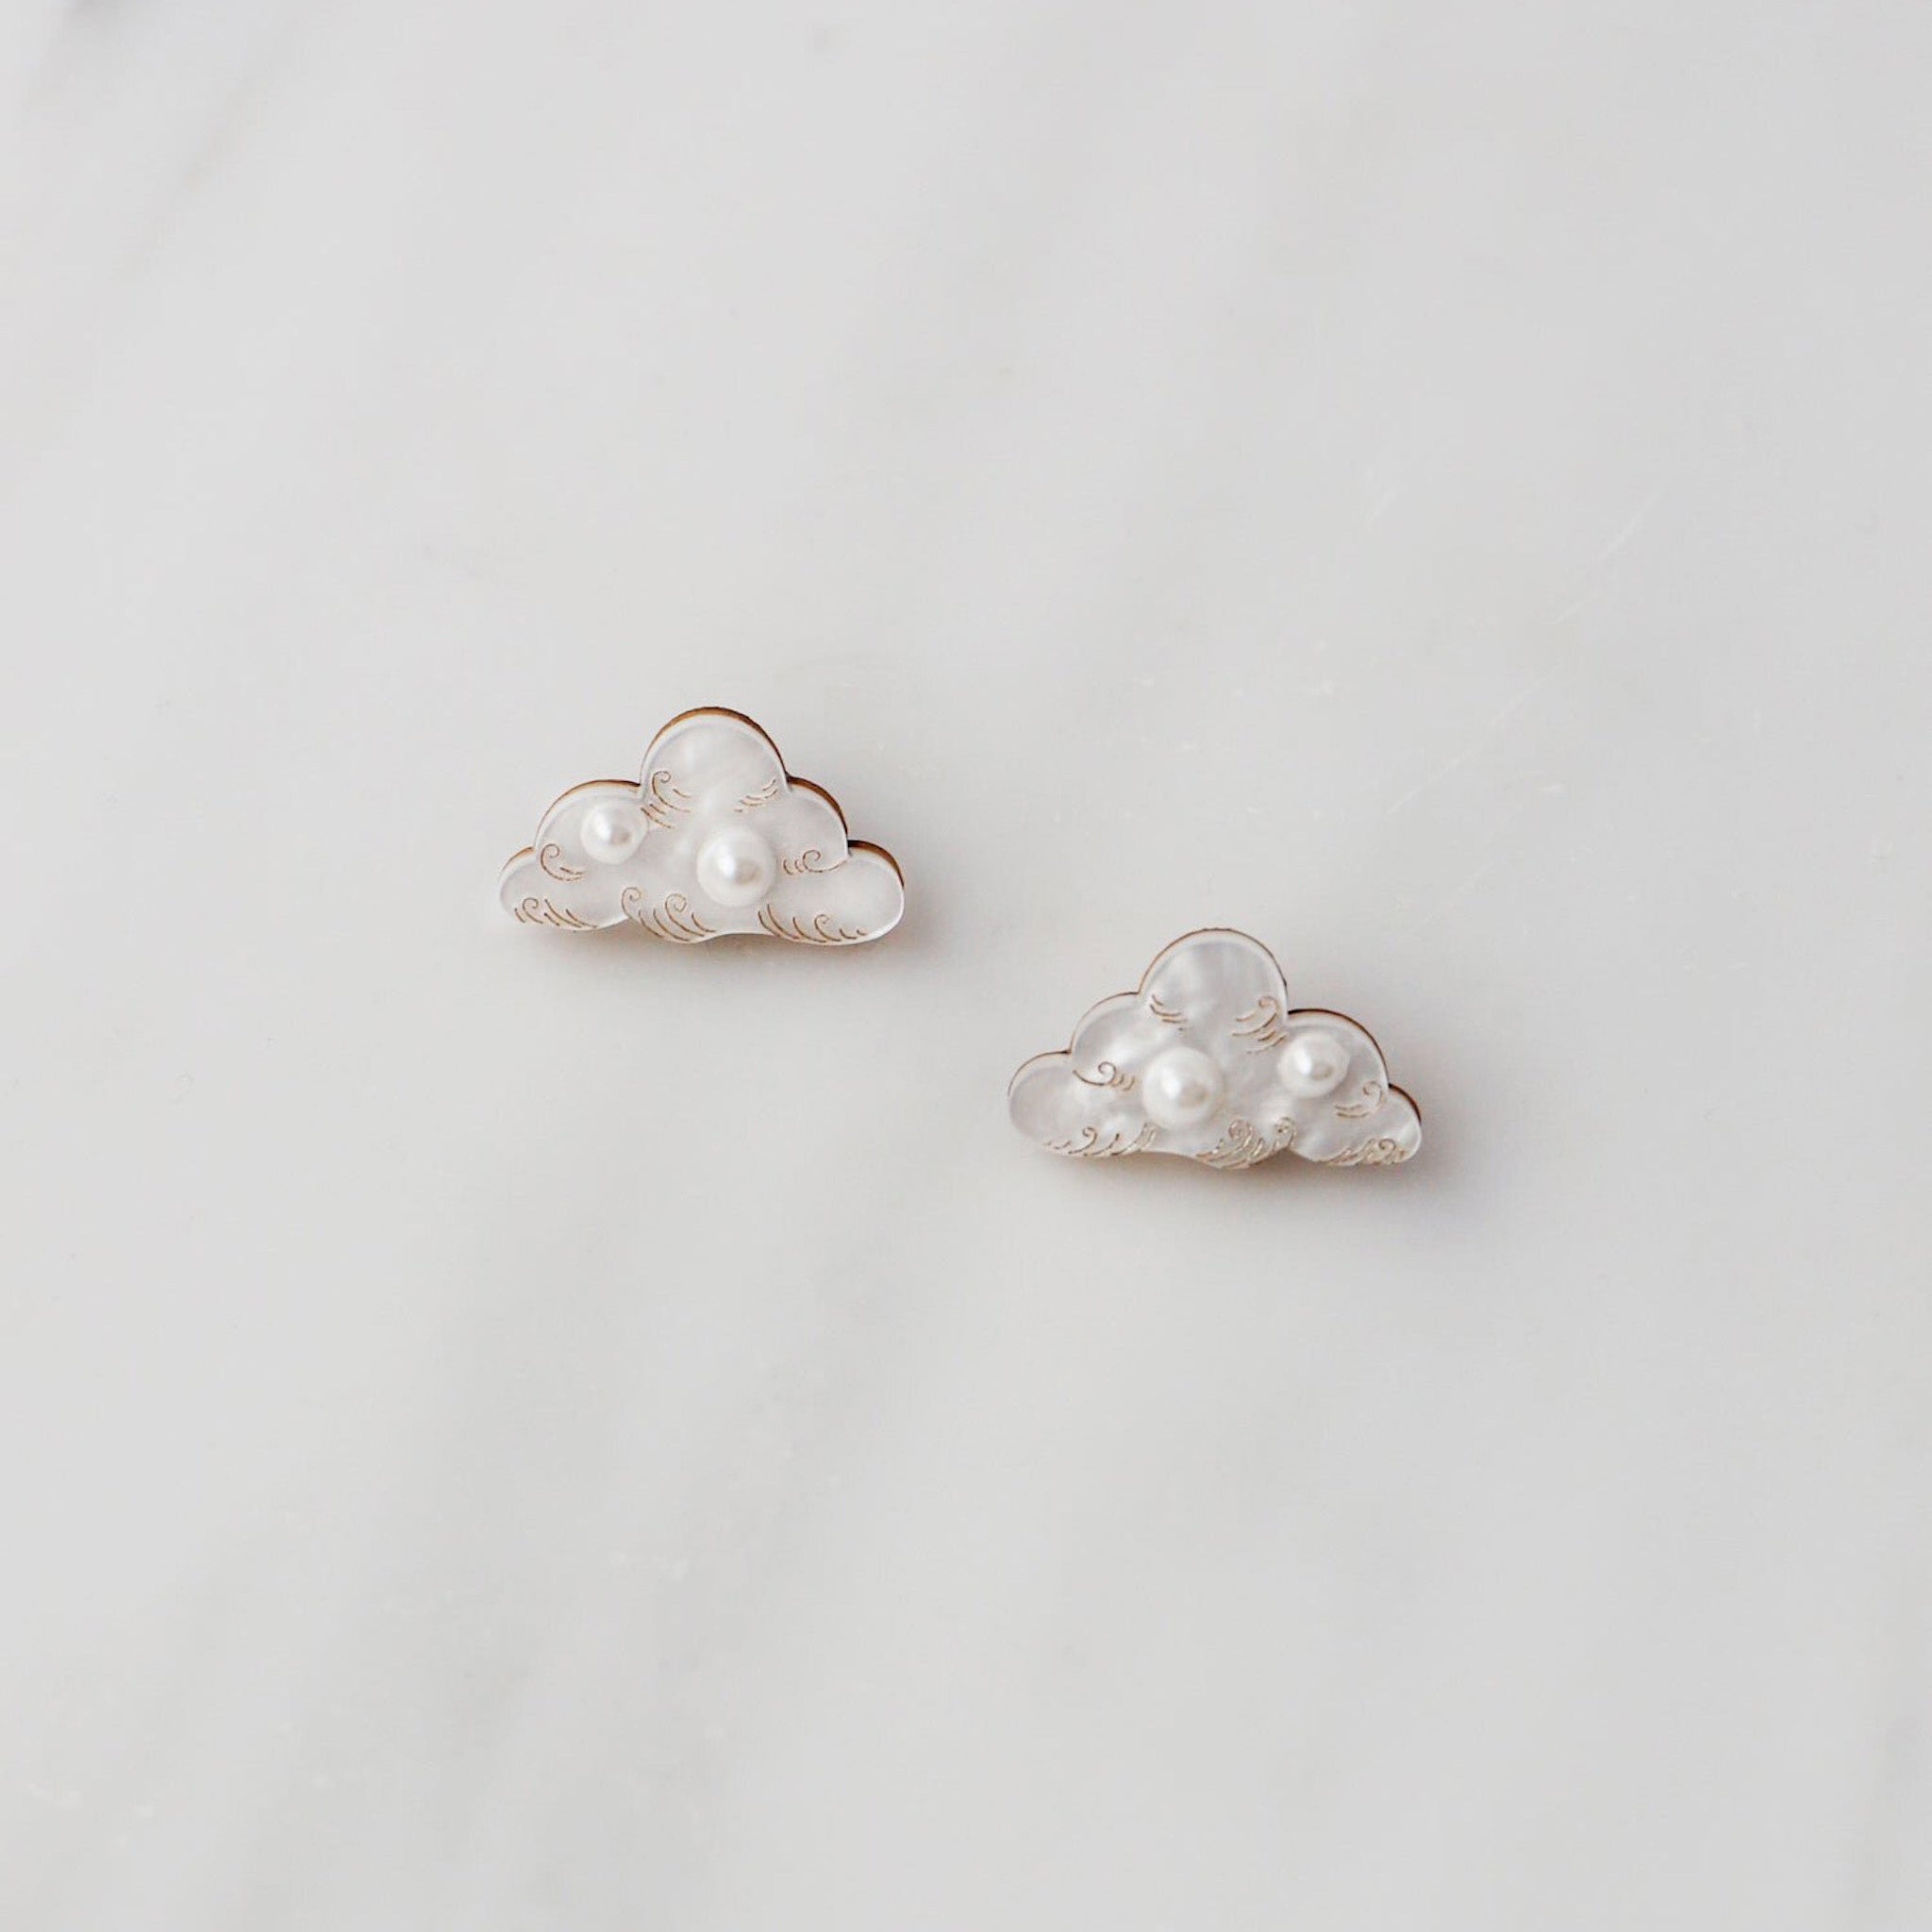 Cloud Stud Earrings